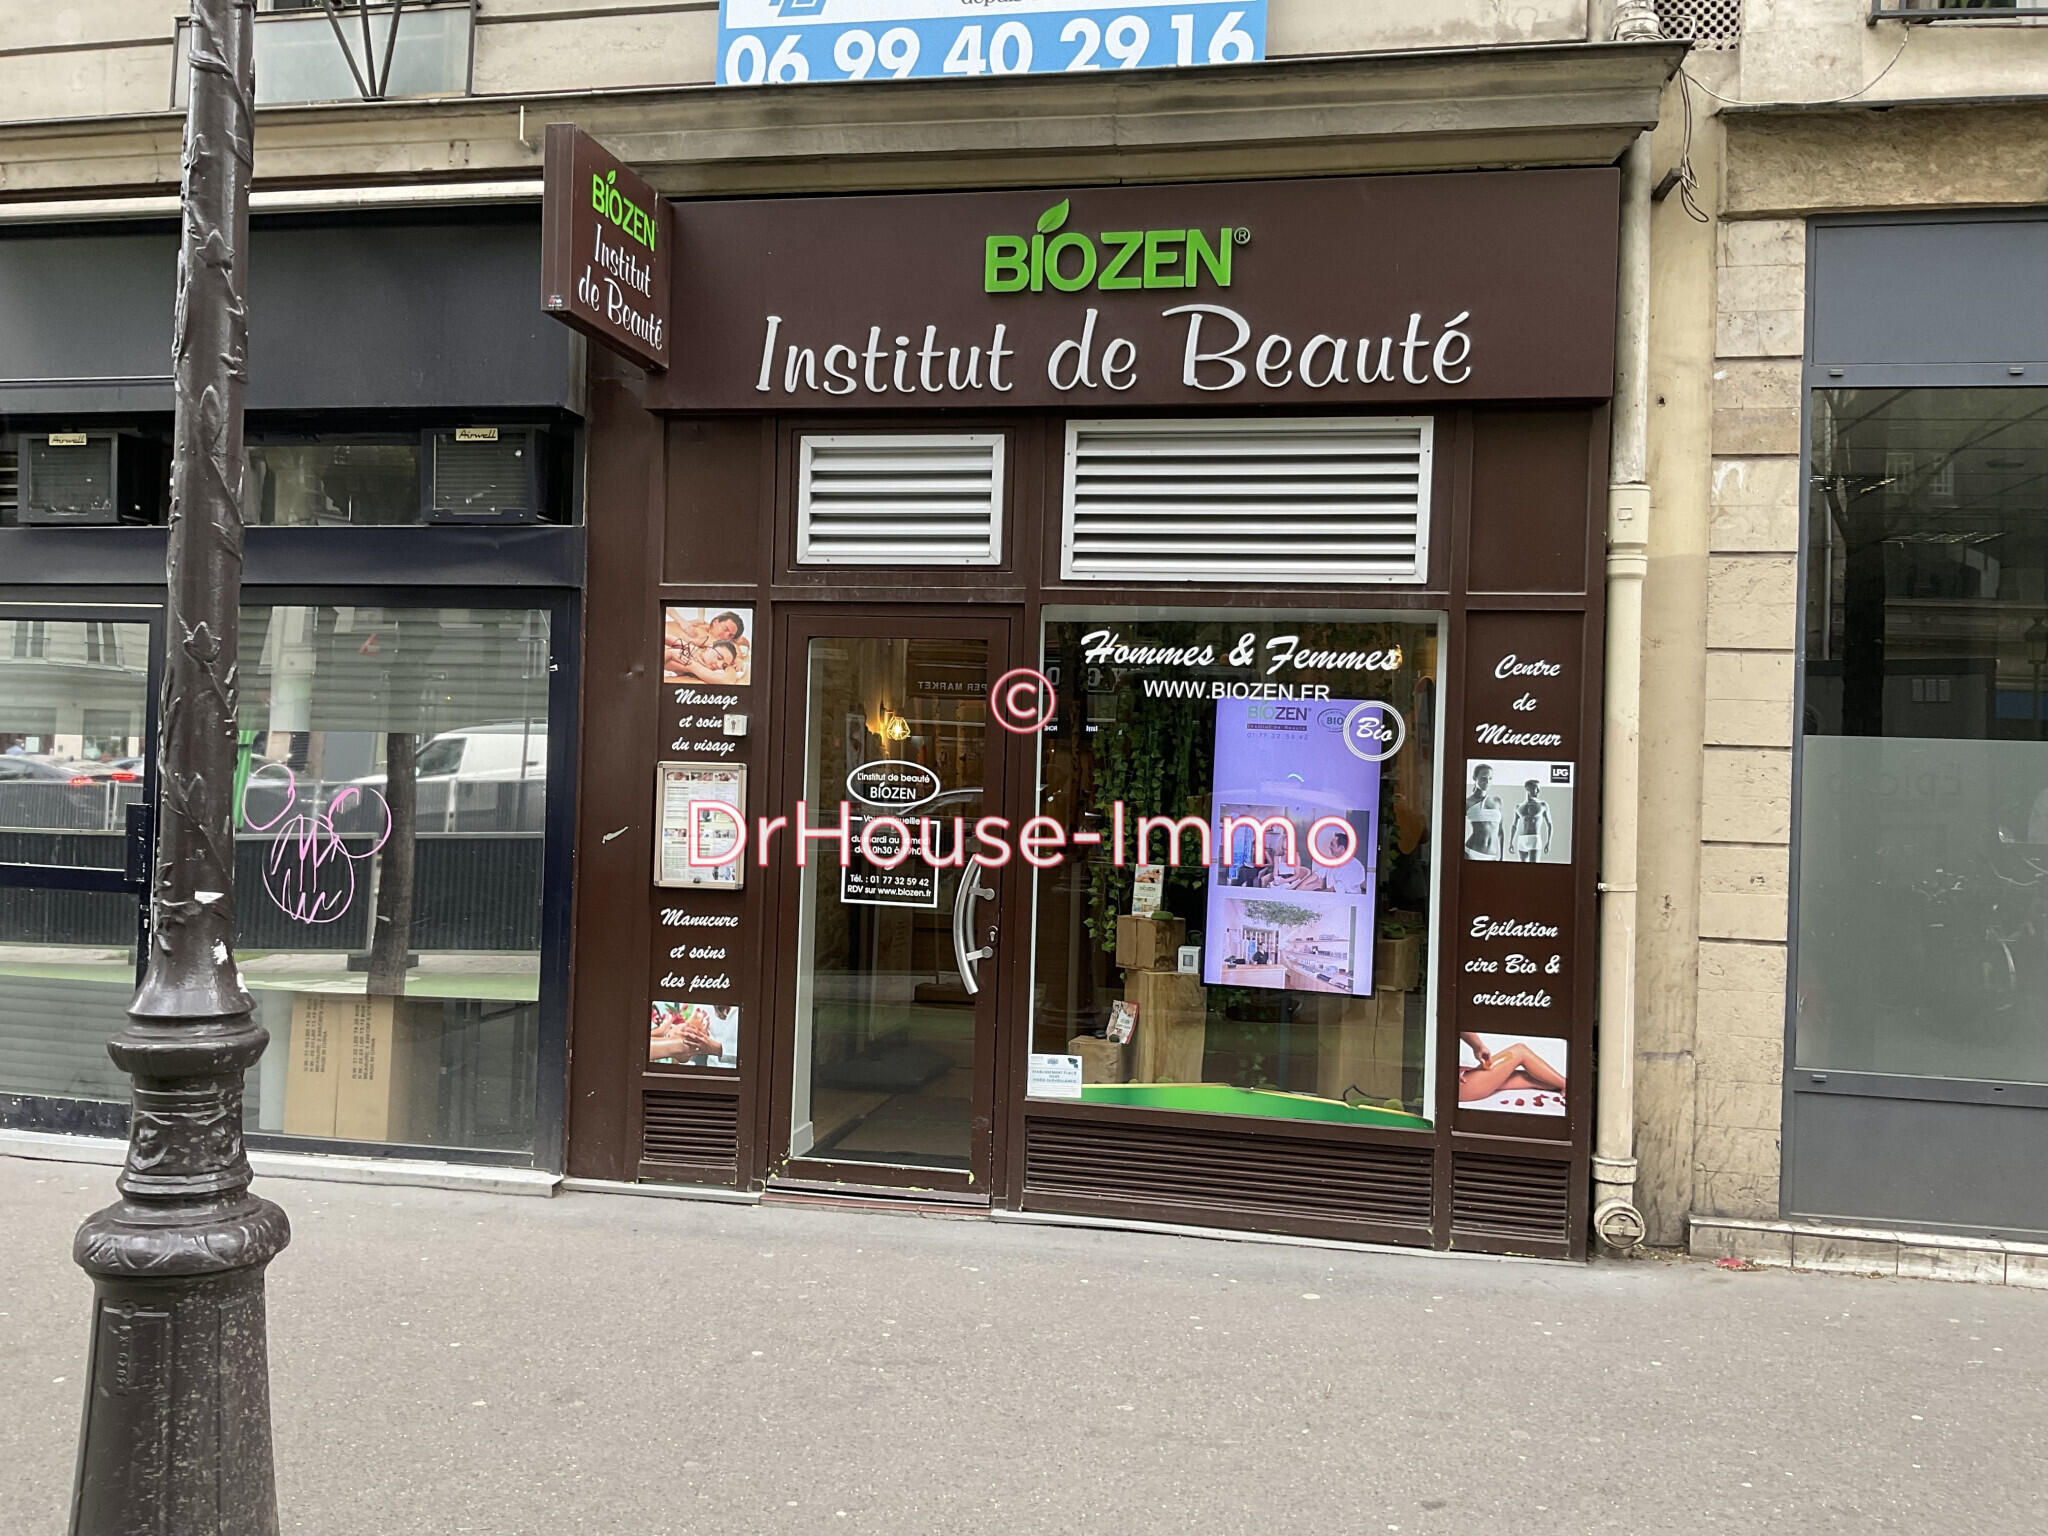 Vente salon d’esthétique sur boulevard à Paris